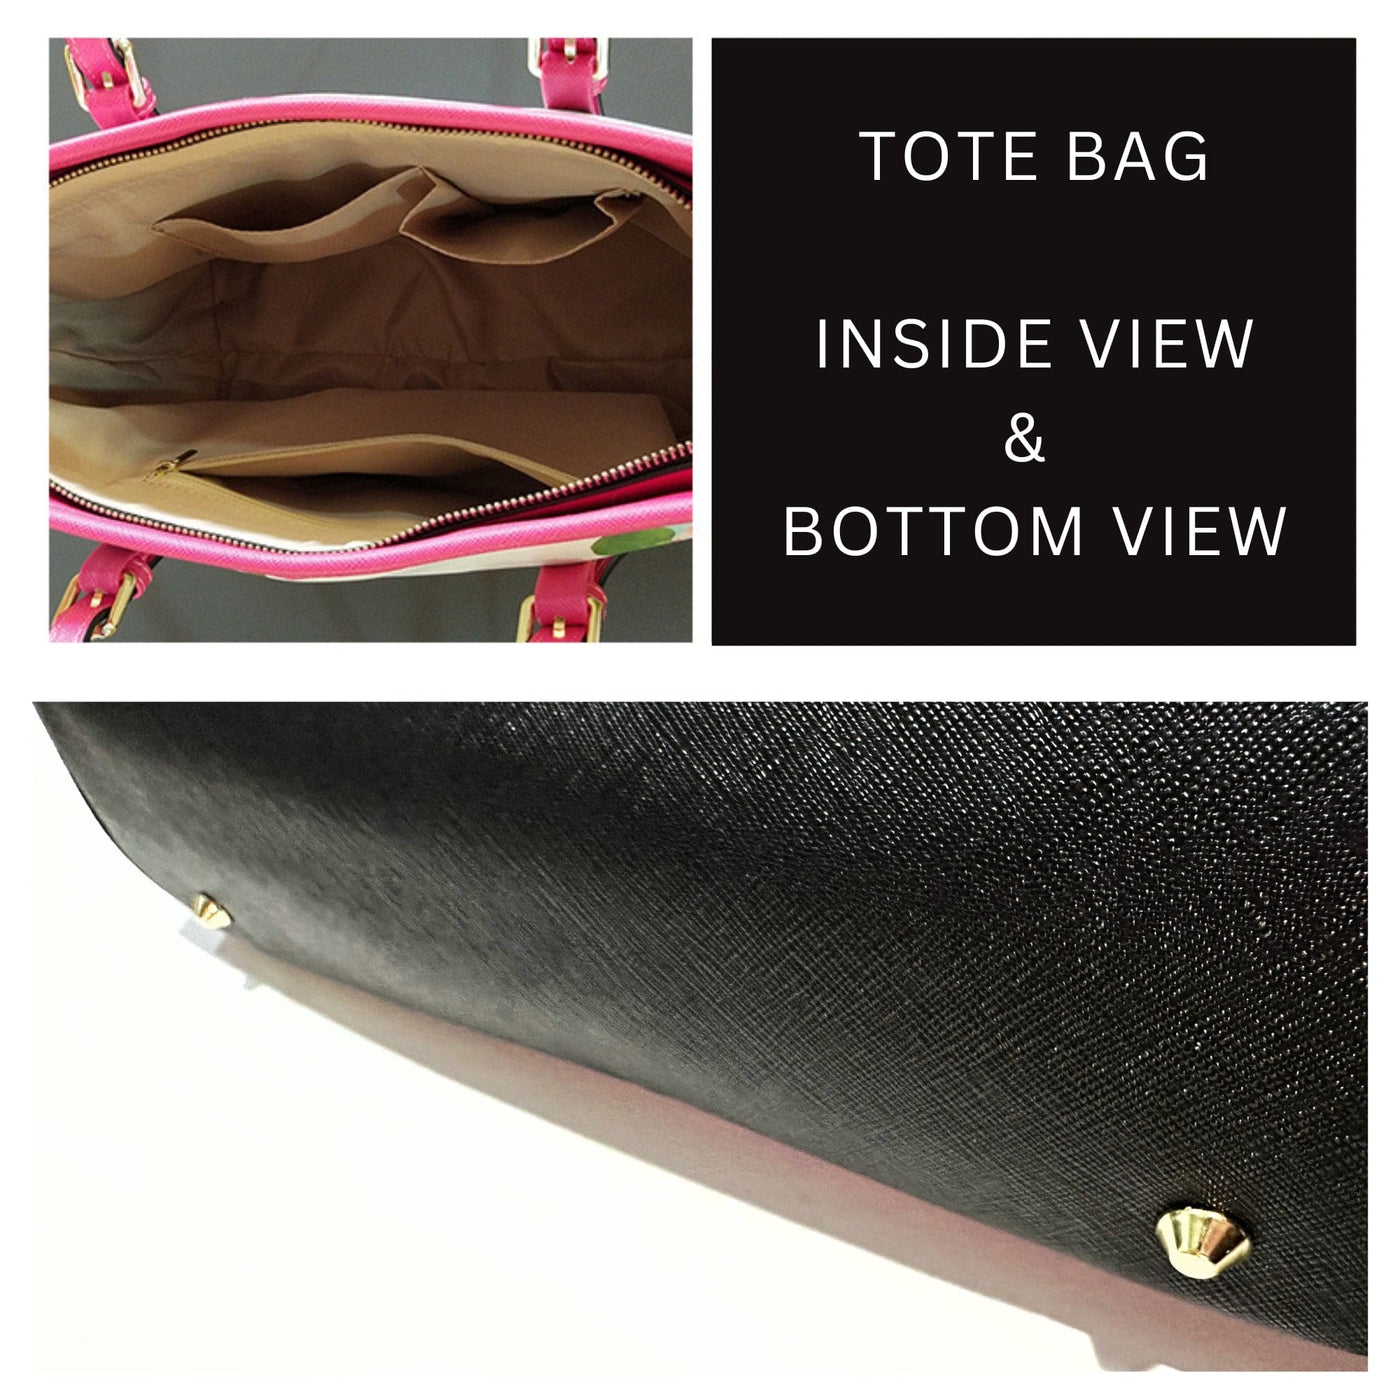 Large Leather Tote Shoulder Bag - Blue And Black Polka Dot T752073 - Bags